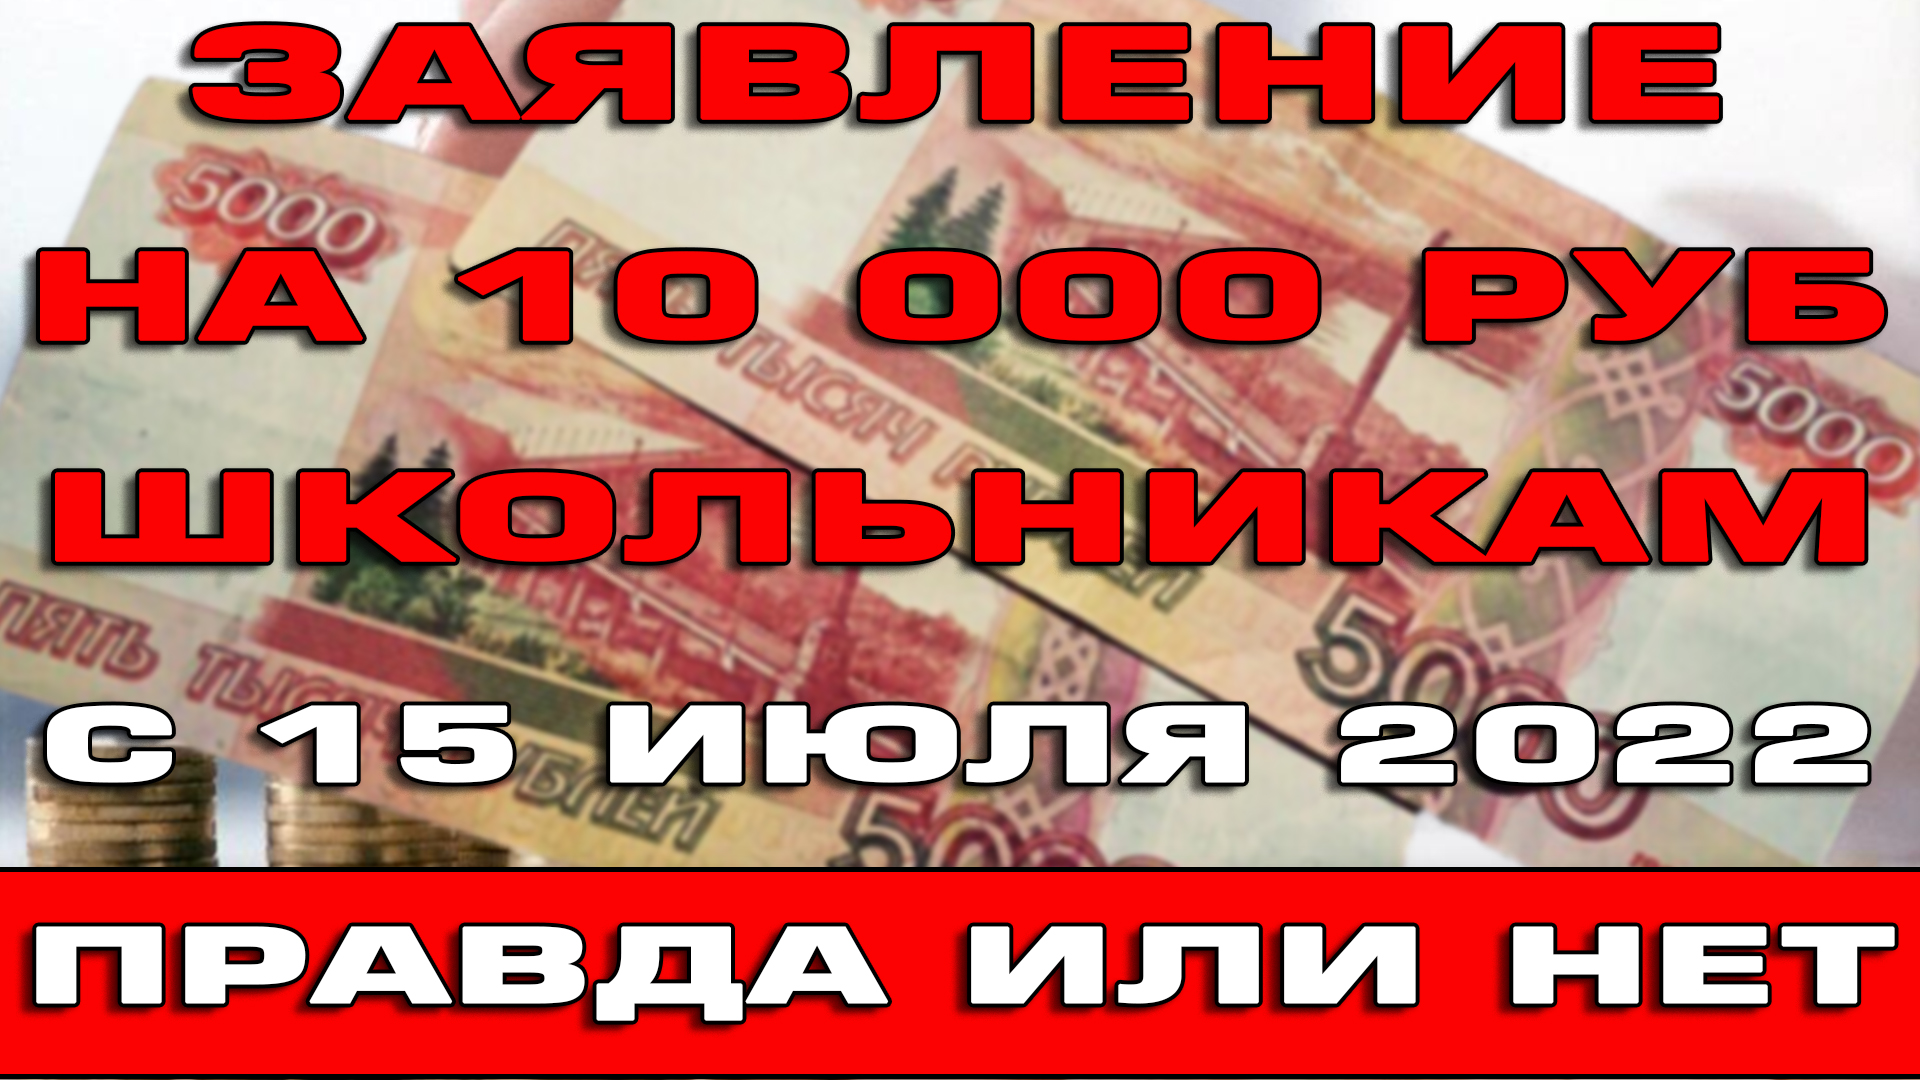 1 сентября 2022 выплаты школьникам будут ли. Выплаты от 10000 на детей. В августе пособия 10000 на детей. Выплата 10000 рублей. Подать заявление на выплату 10000 рублей на школьника.